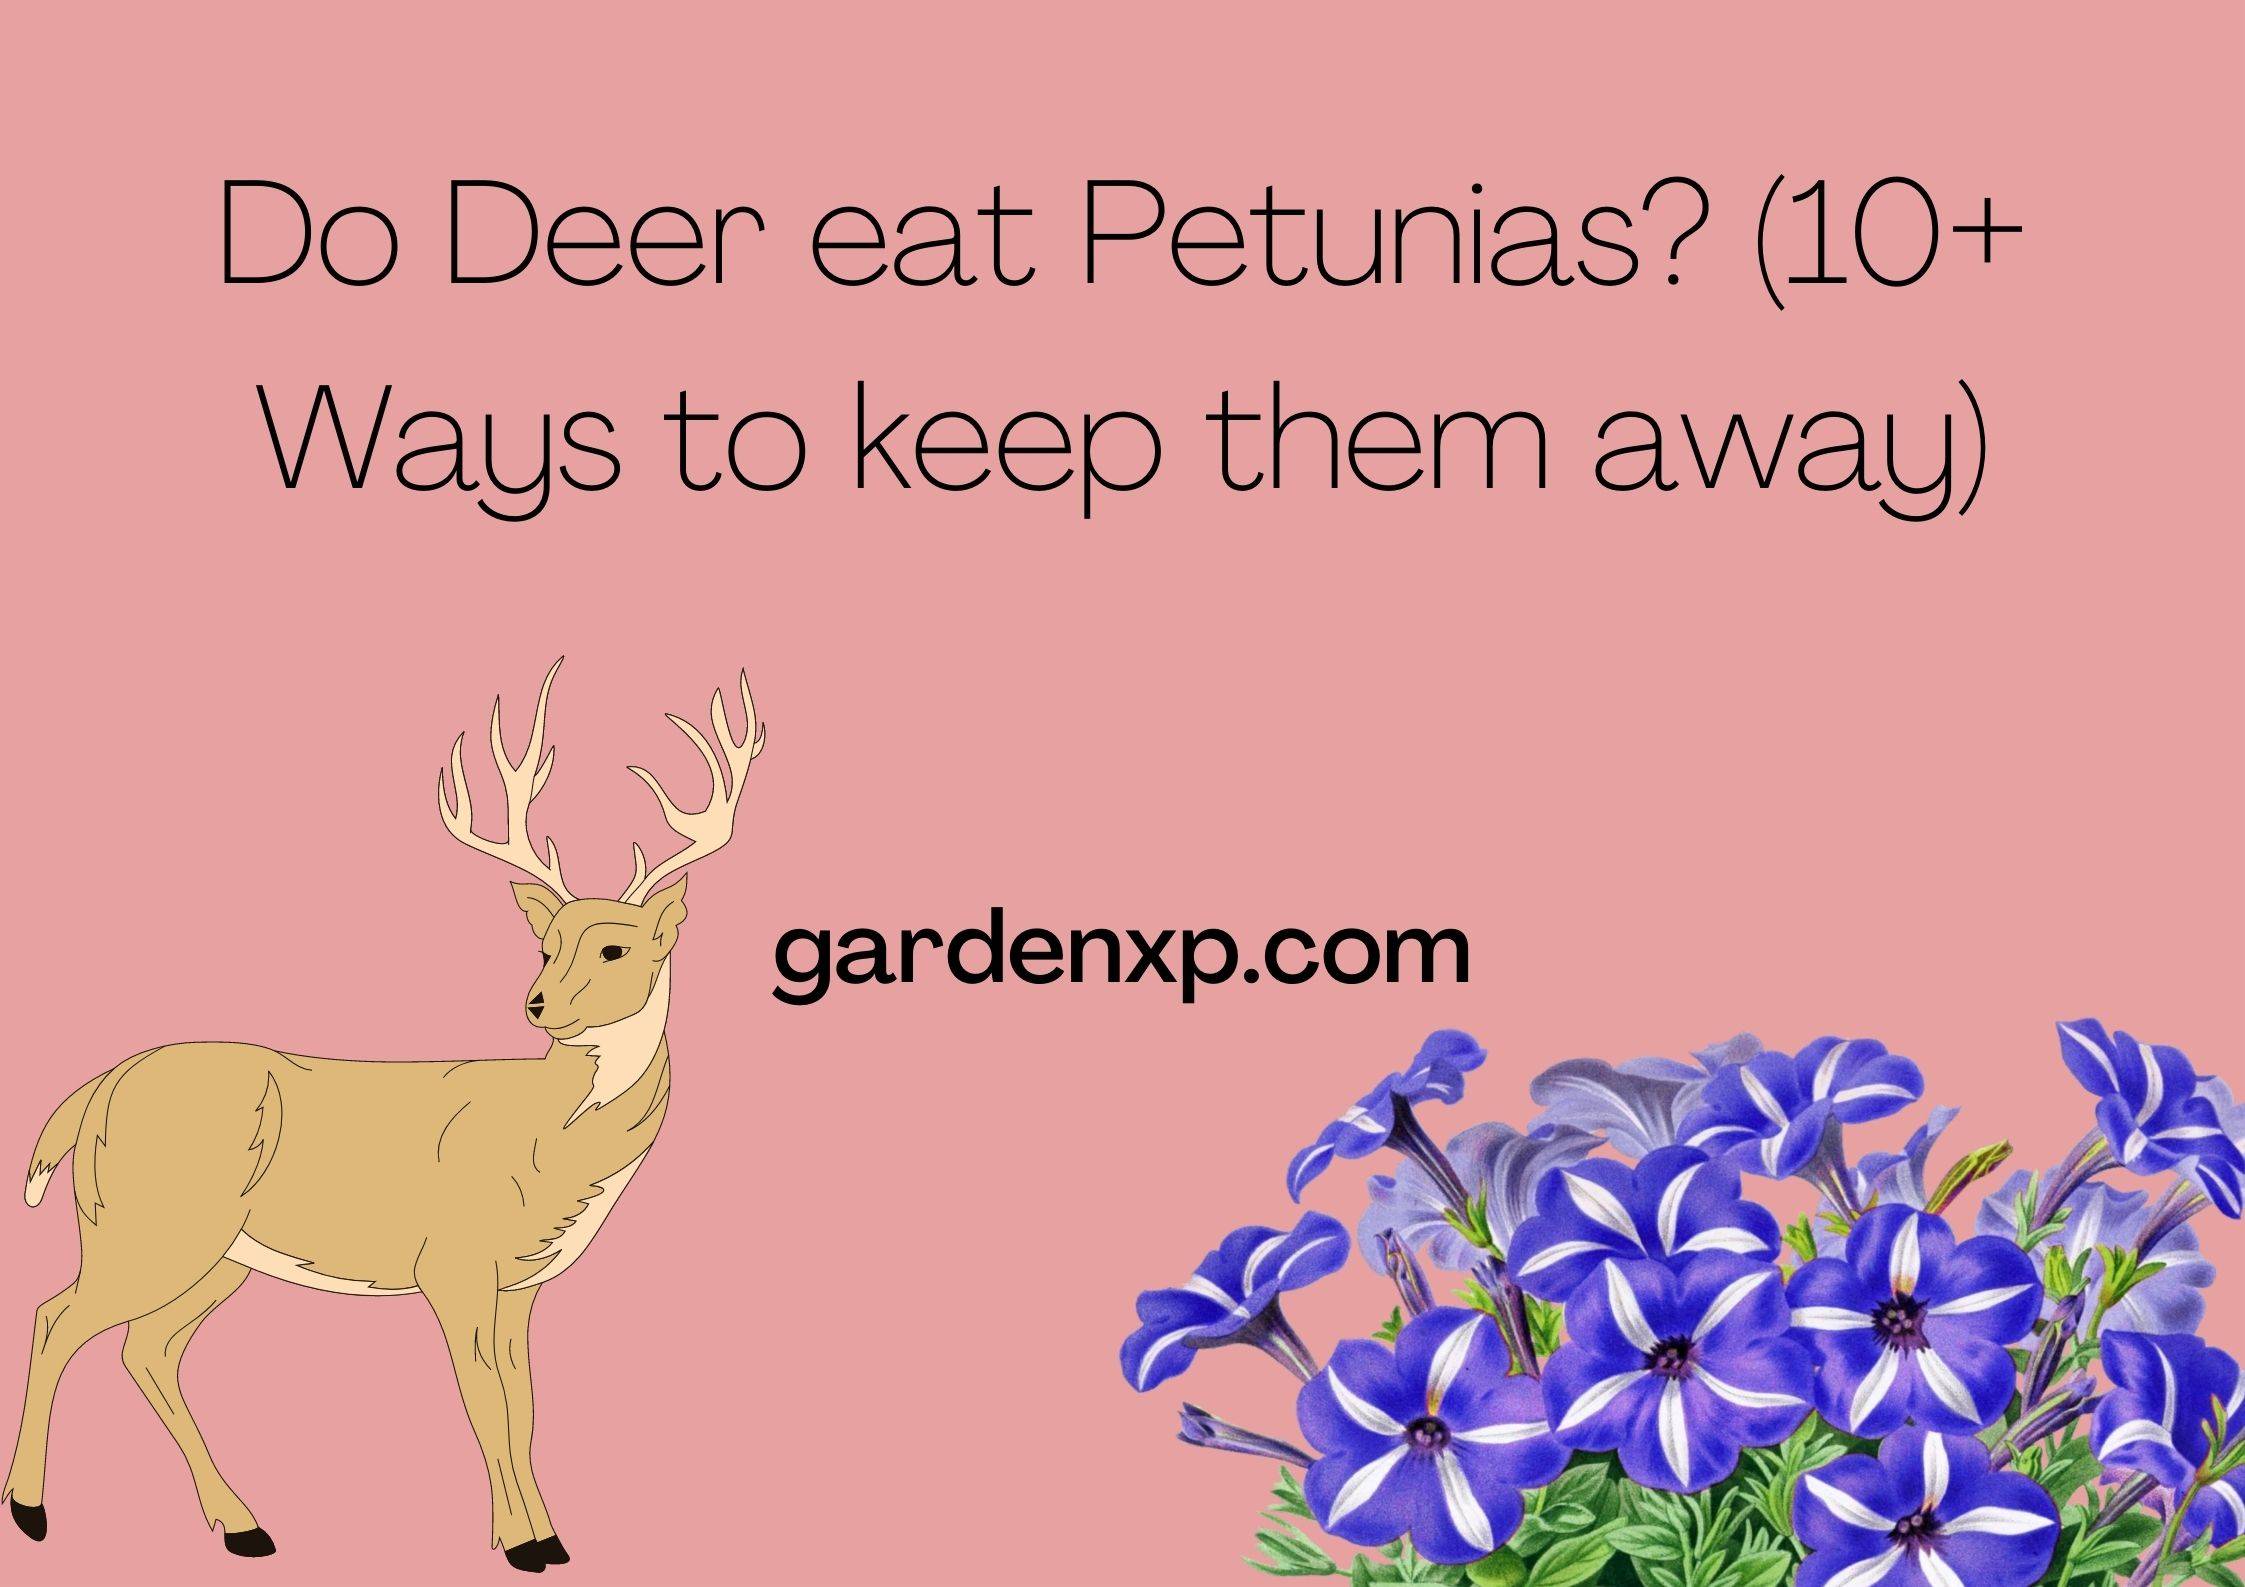 Do Deer eat Petunias? (10+ Ways to keep them away)